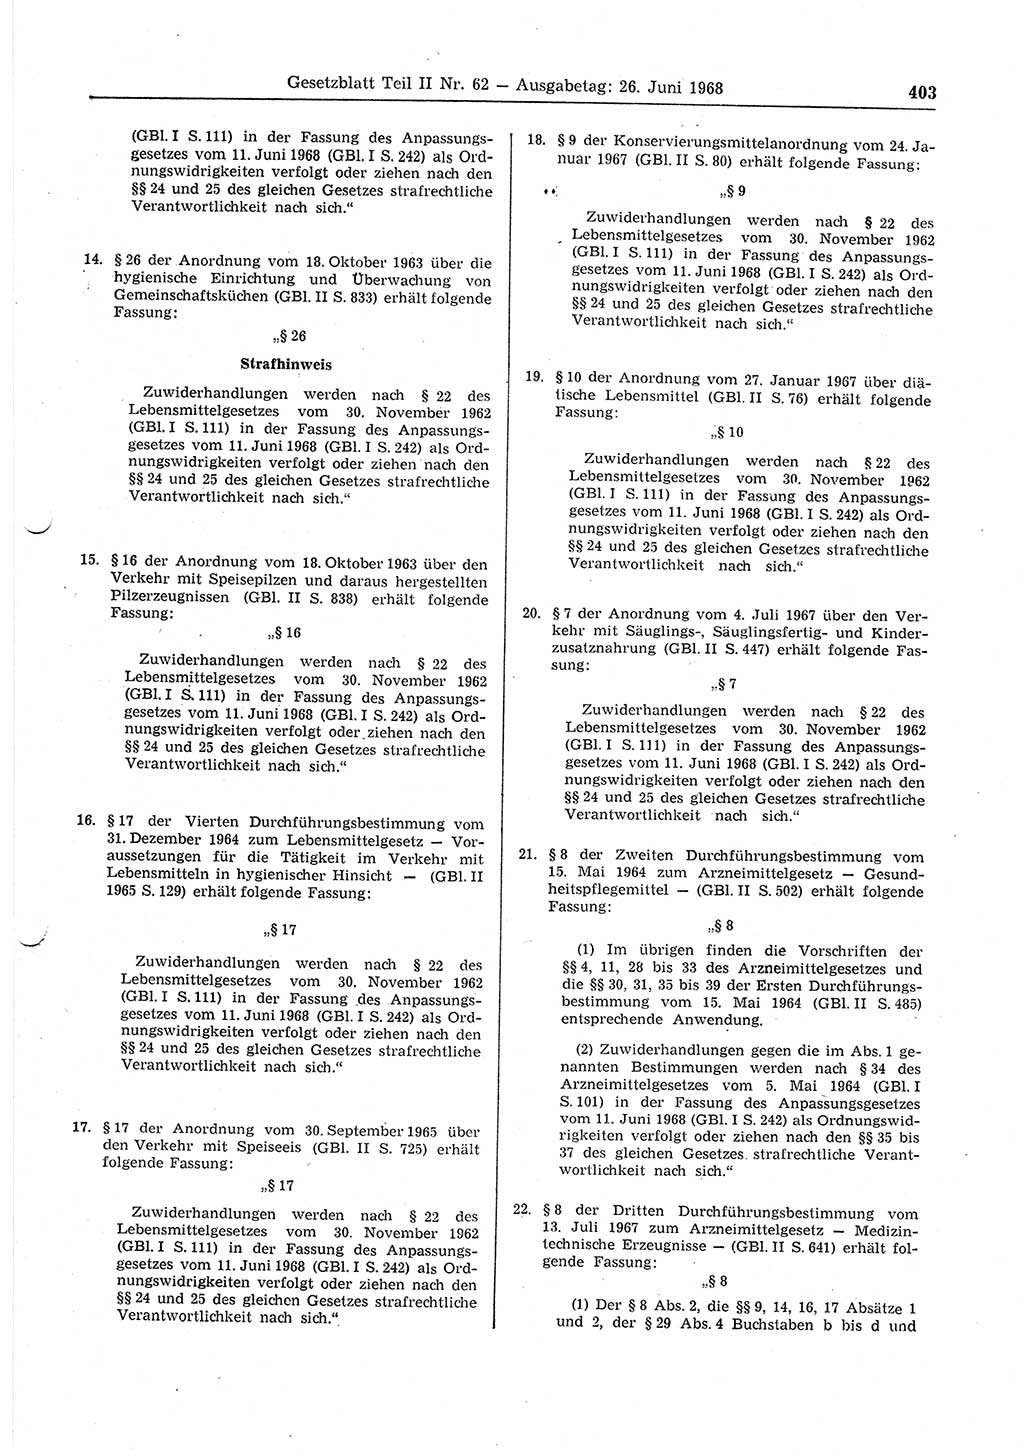 Gesetzblatt (GBl.) der Deutschen Demokratischen Republik (DDR) Teil ⅠⅠ 1968, Seite 403 (GBl. DDR ⅠⅠ 1968, S. 403)